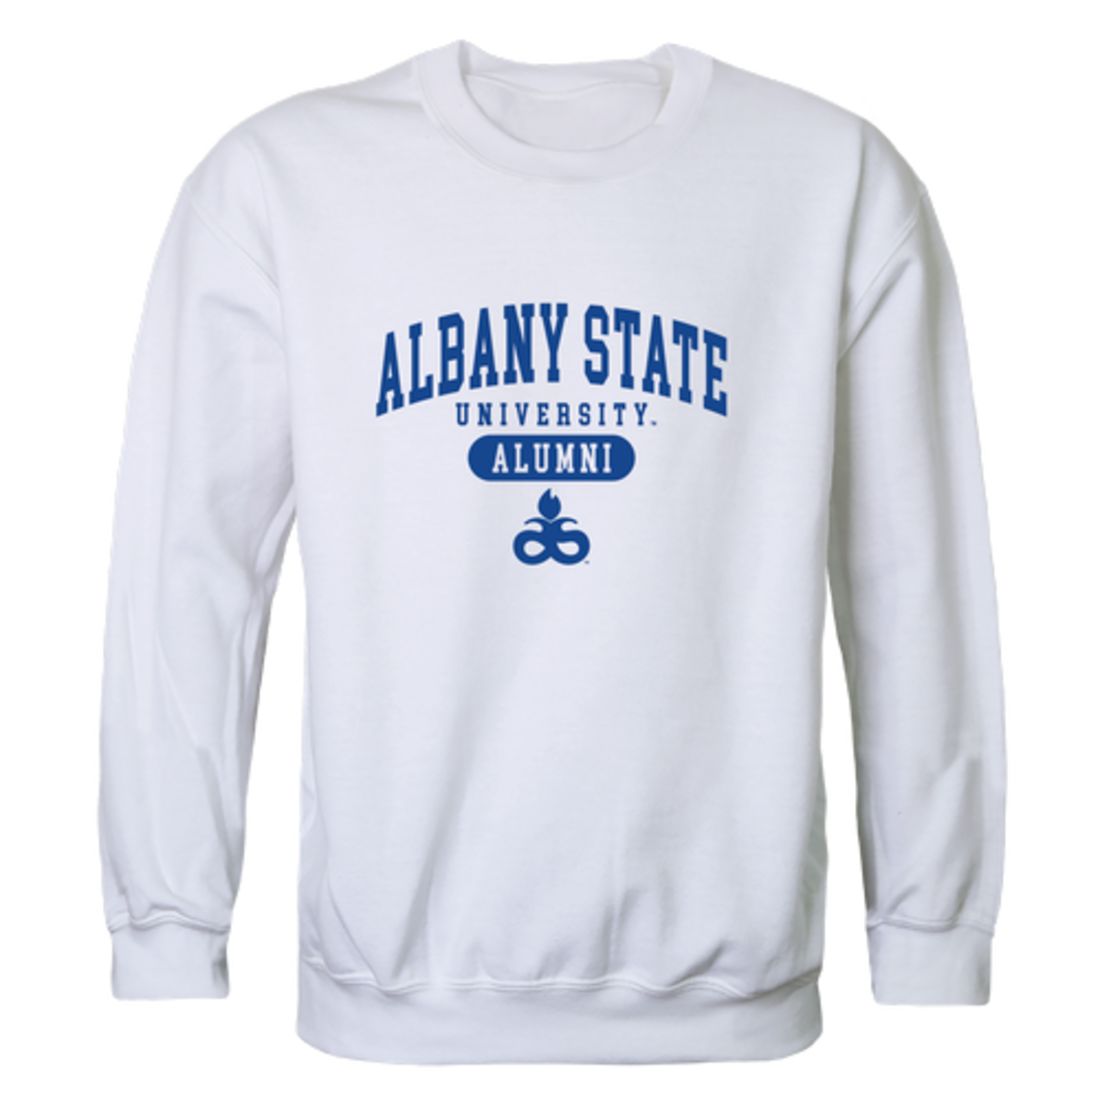 Albany State University Golden Rams Alumni Crewneck Sweatshirt